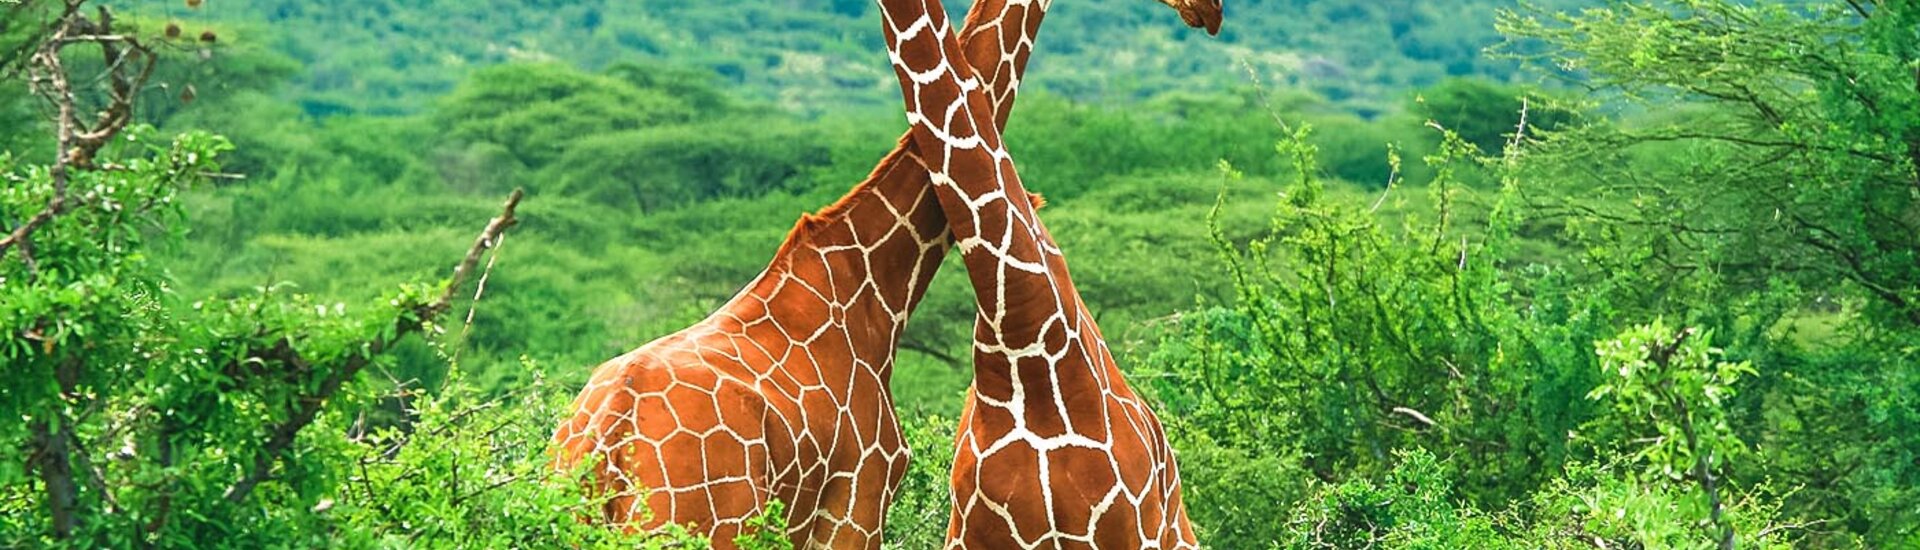 Giraffen Paar im Samburu National Reserve, Kenia